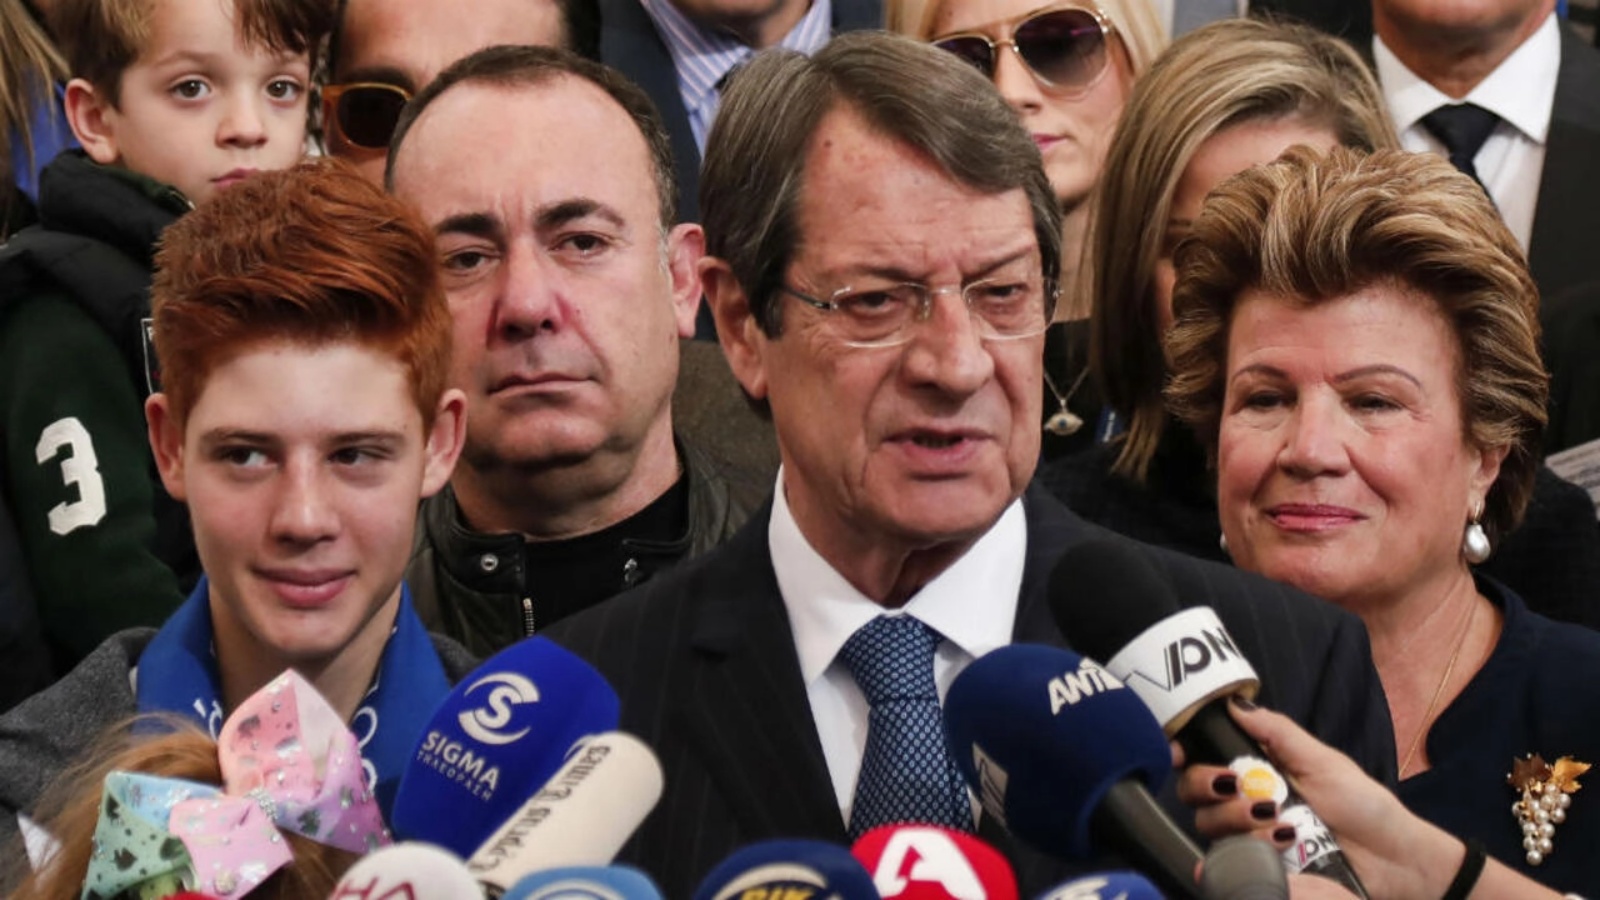 الرئيس القبرصي نيكوس أناستاسيادس (وسط الصورة) يقف بجانب زوجته أندري (يمين) وهو يخاطب وسائل الإعلام بعد الإدلاء بصوته في الانتخابات الرئاسية القبرصية 2018 في مركز اقتراع في مدينة ليماسول في 28 يناير 2018